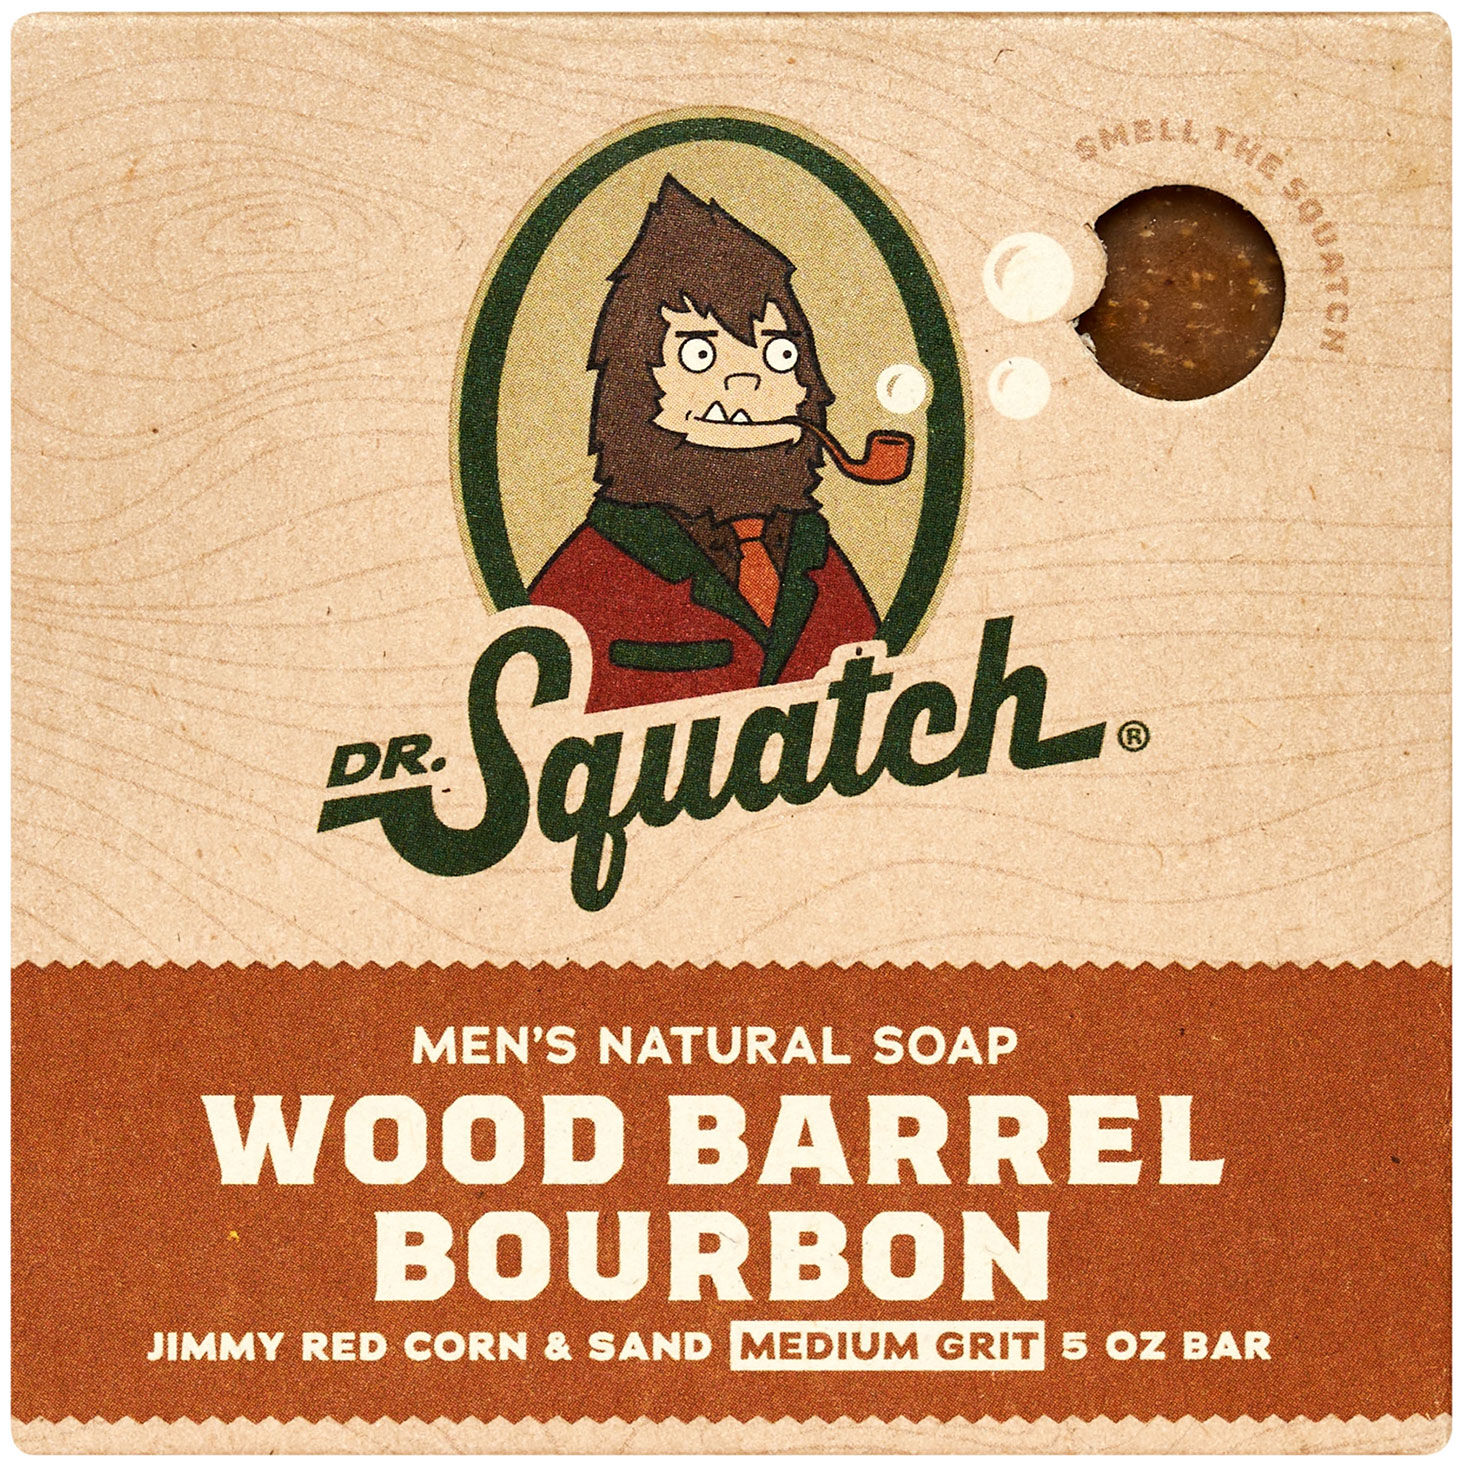 Dr Squatch wood barrel bourbon 